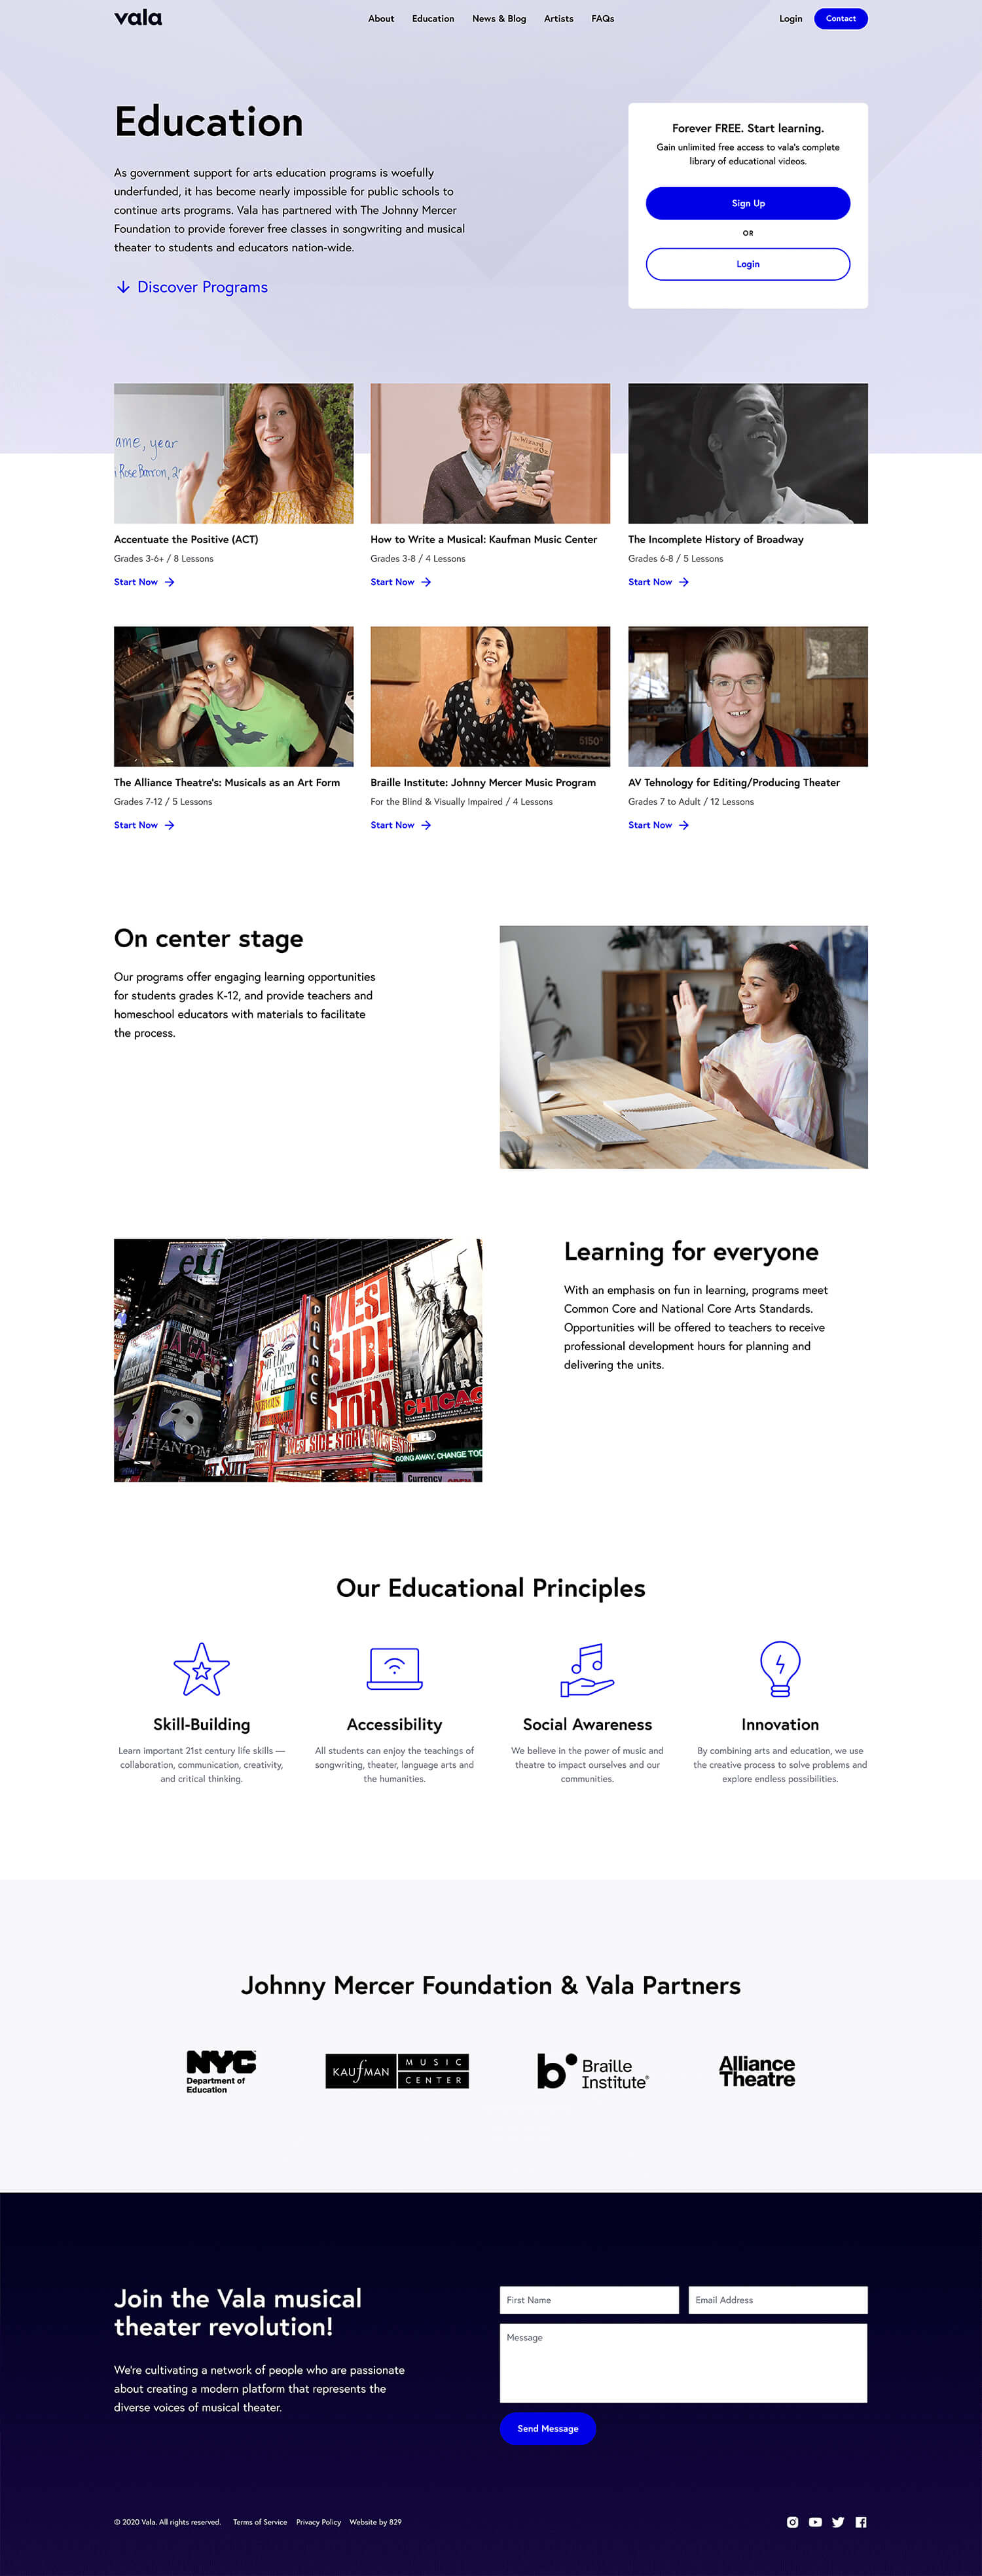 Desktop 'Education' landing page for the Vala website